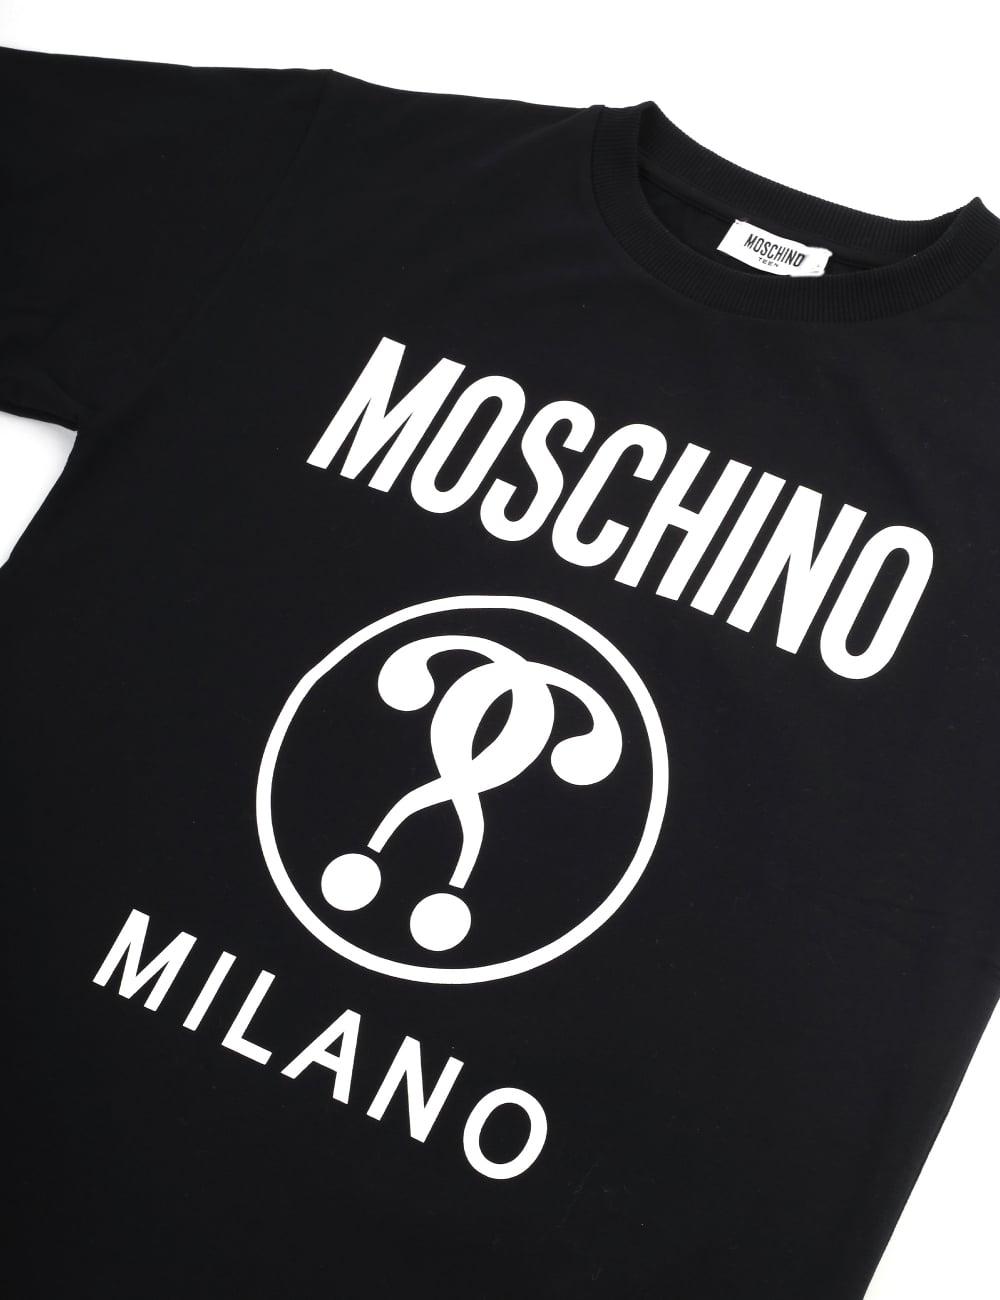 Moschino Milano Logo - LogoDix